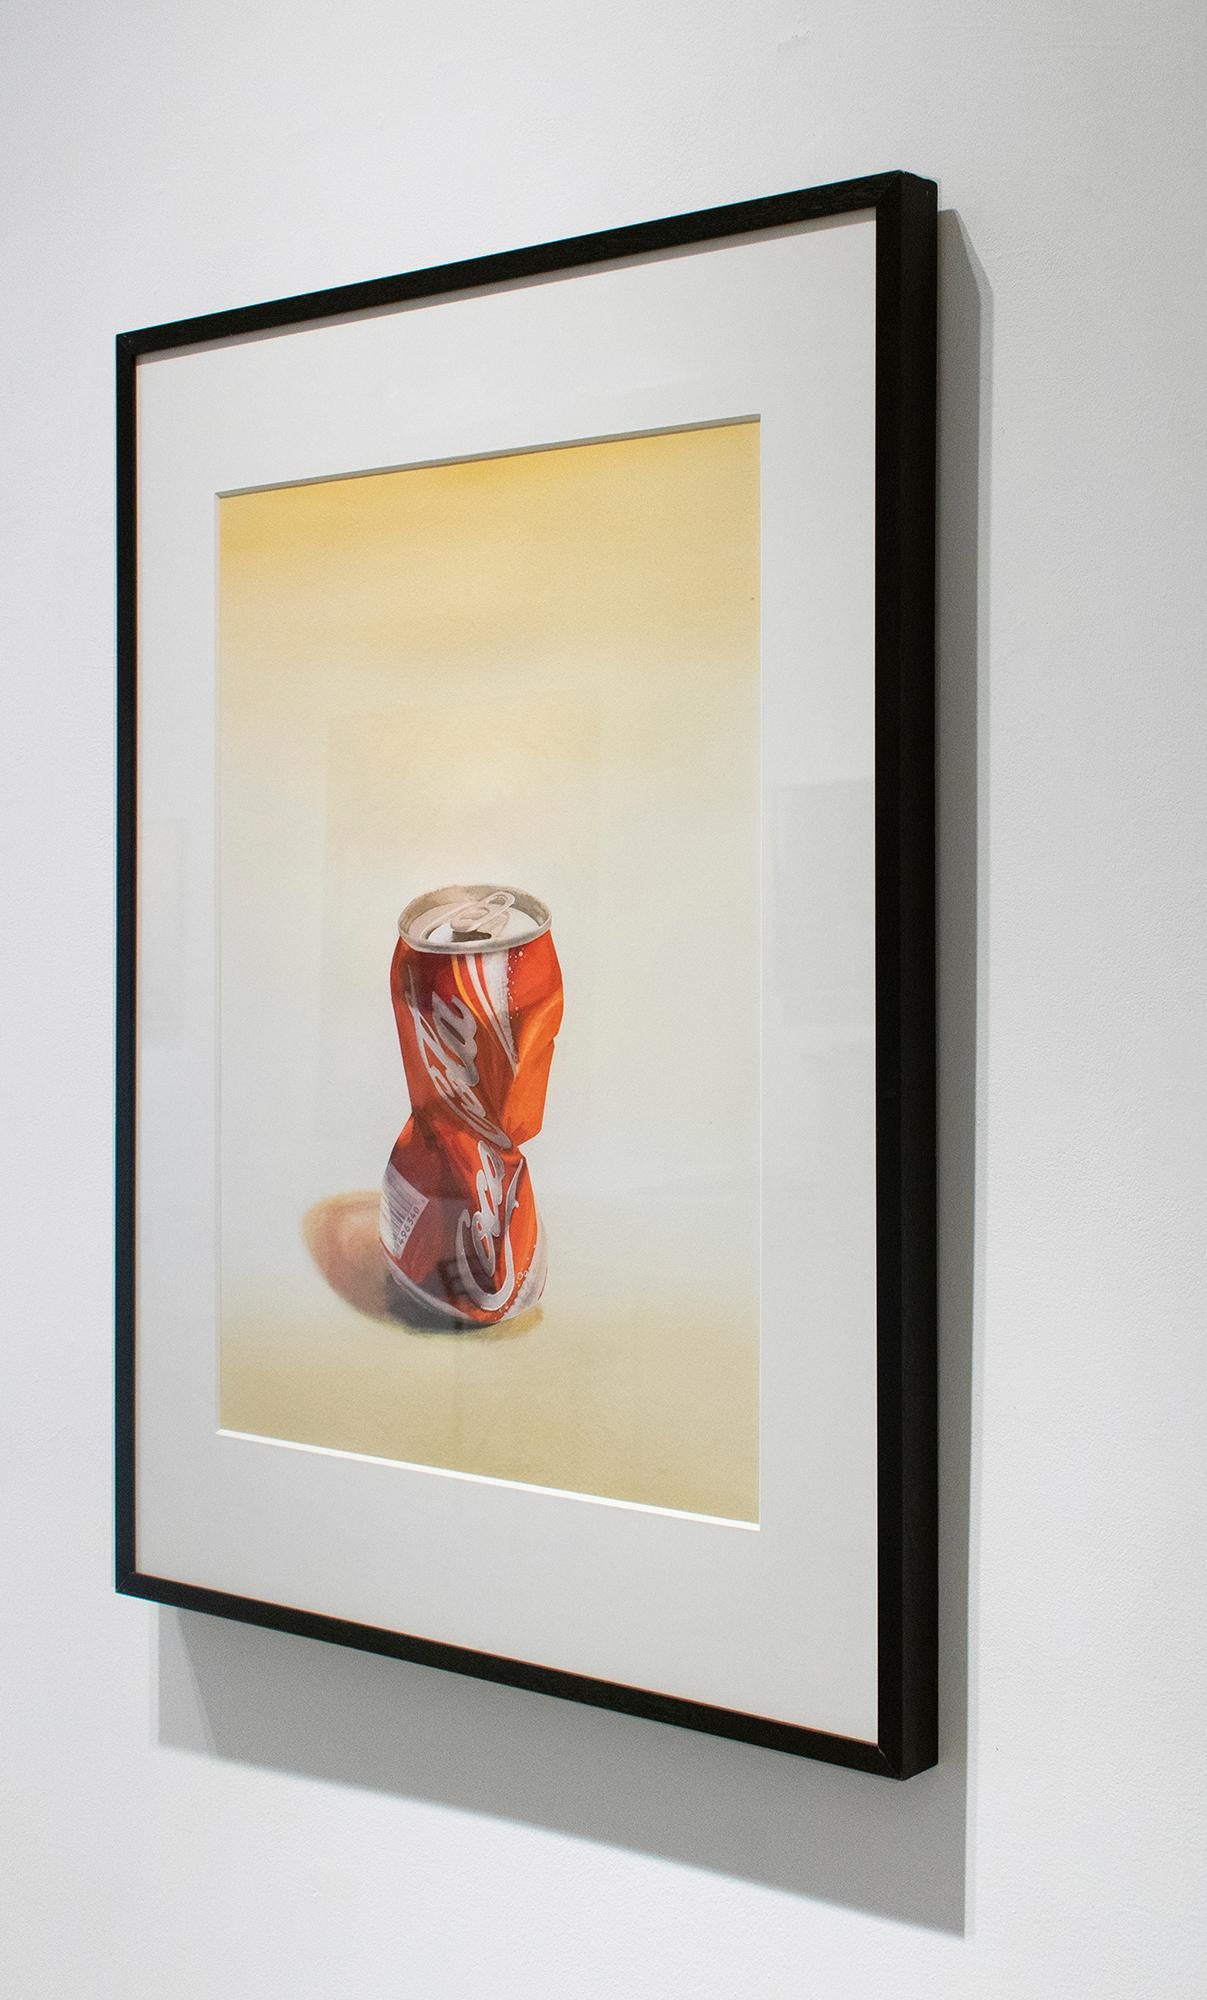 Coca Cola (fotorealistisches Aquarell-Pop-Art-Gemälde einer zerkleinerten roten Sodadose) – Painting von Scott Nelson Foster